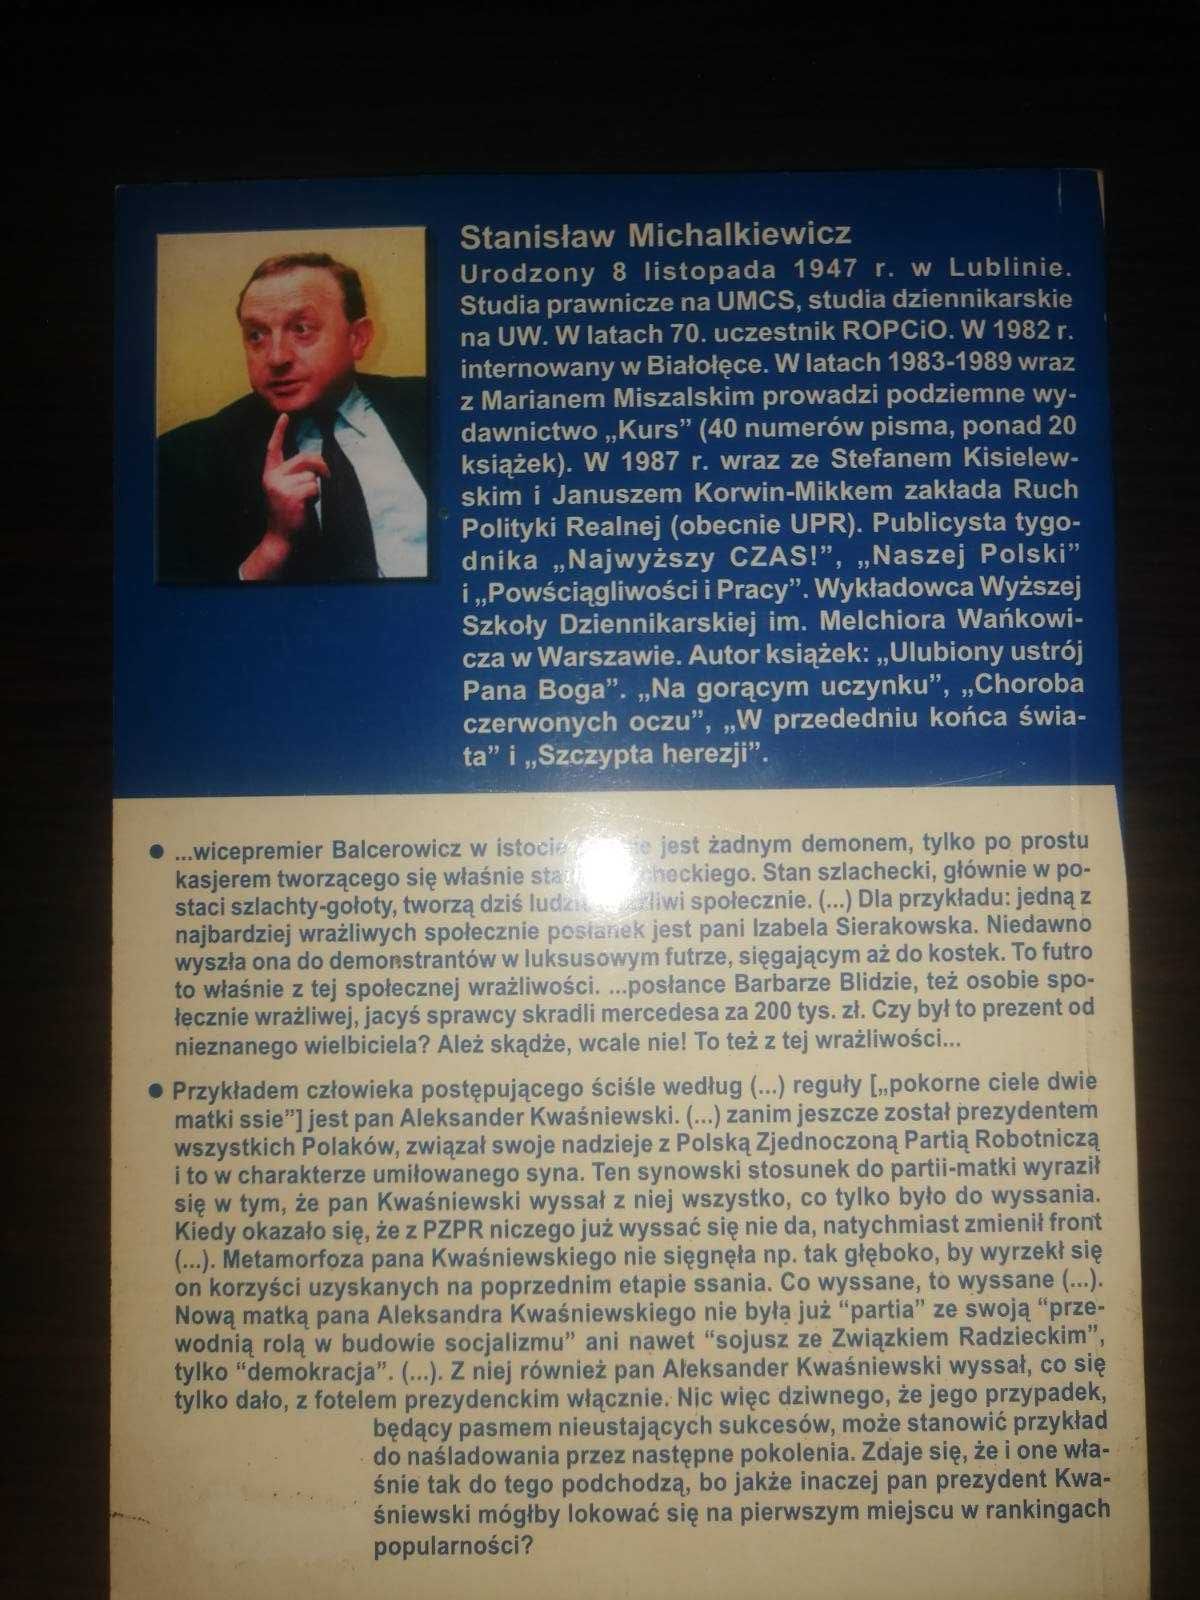 Stanisław Michalkiewicz - Polska ormowcem Europy